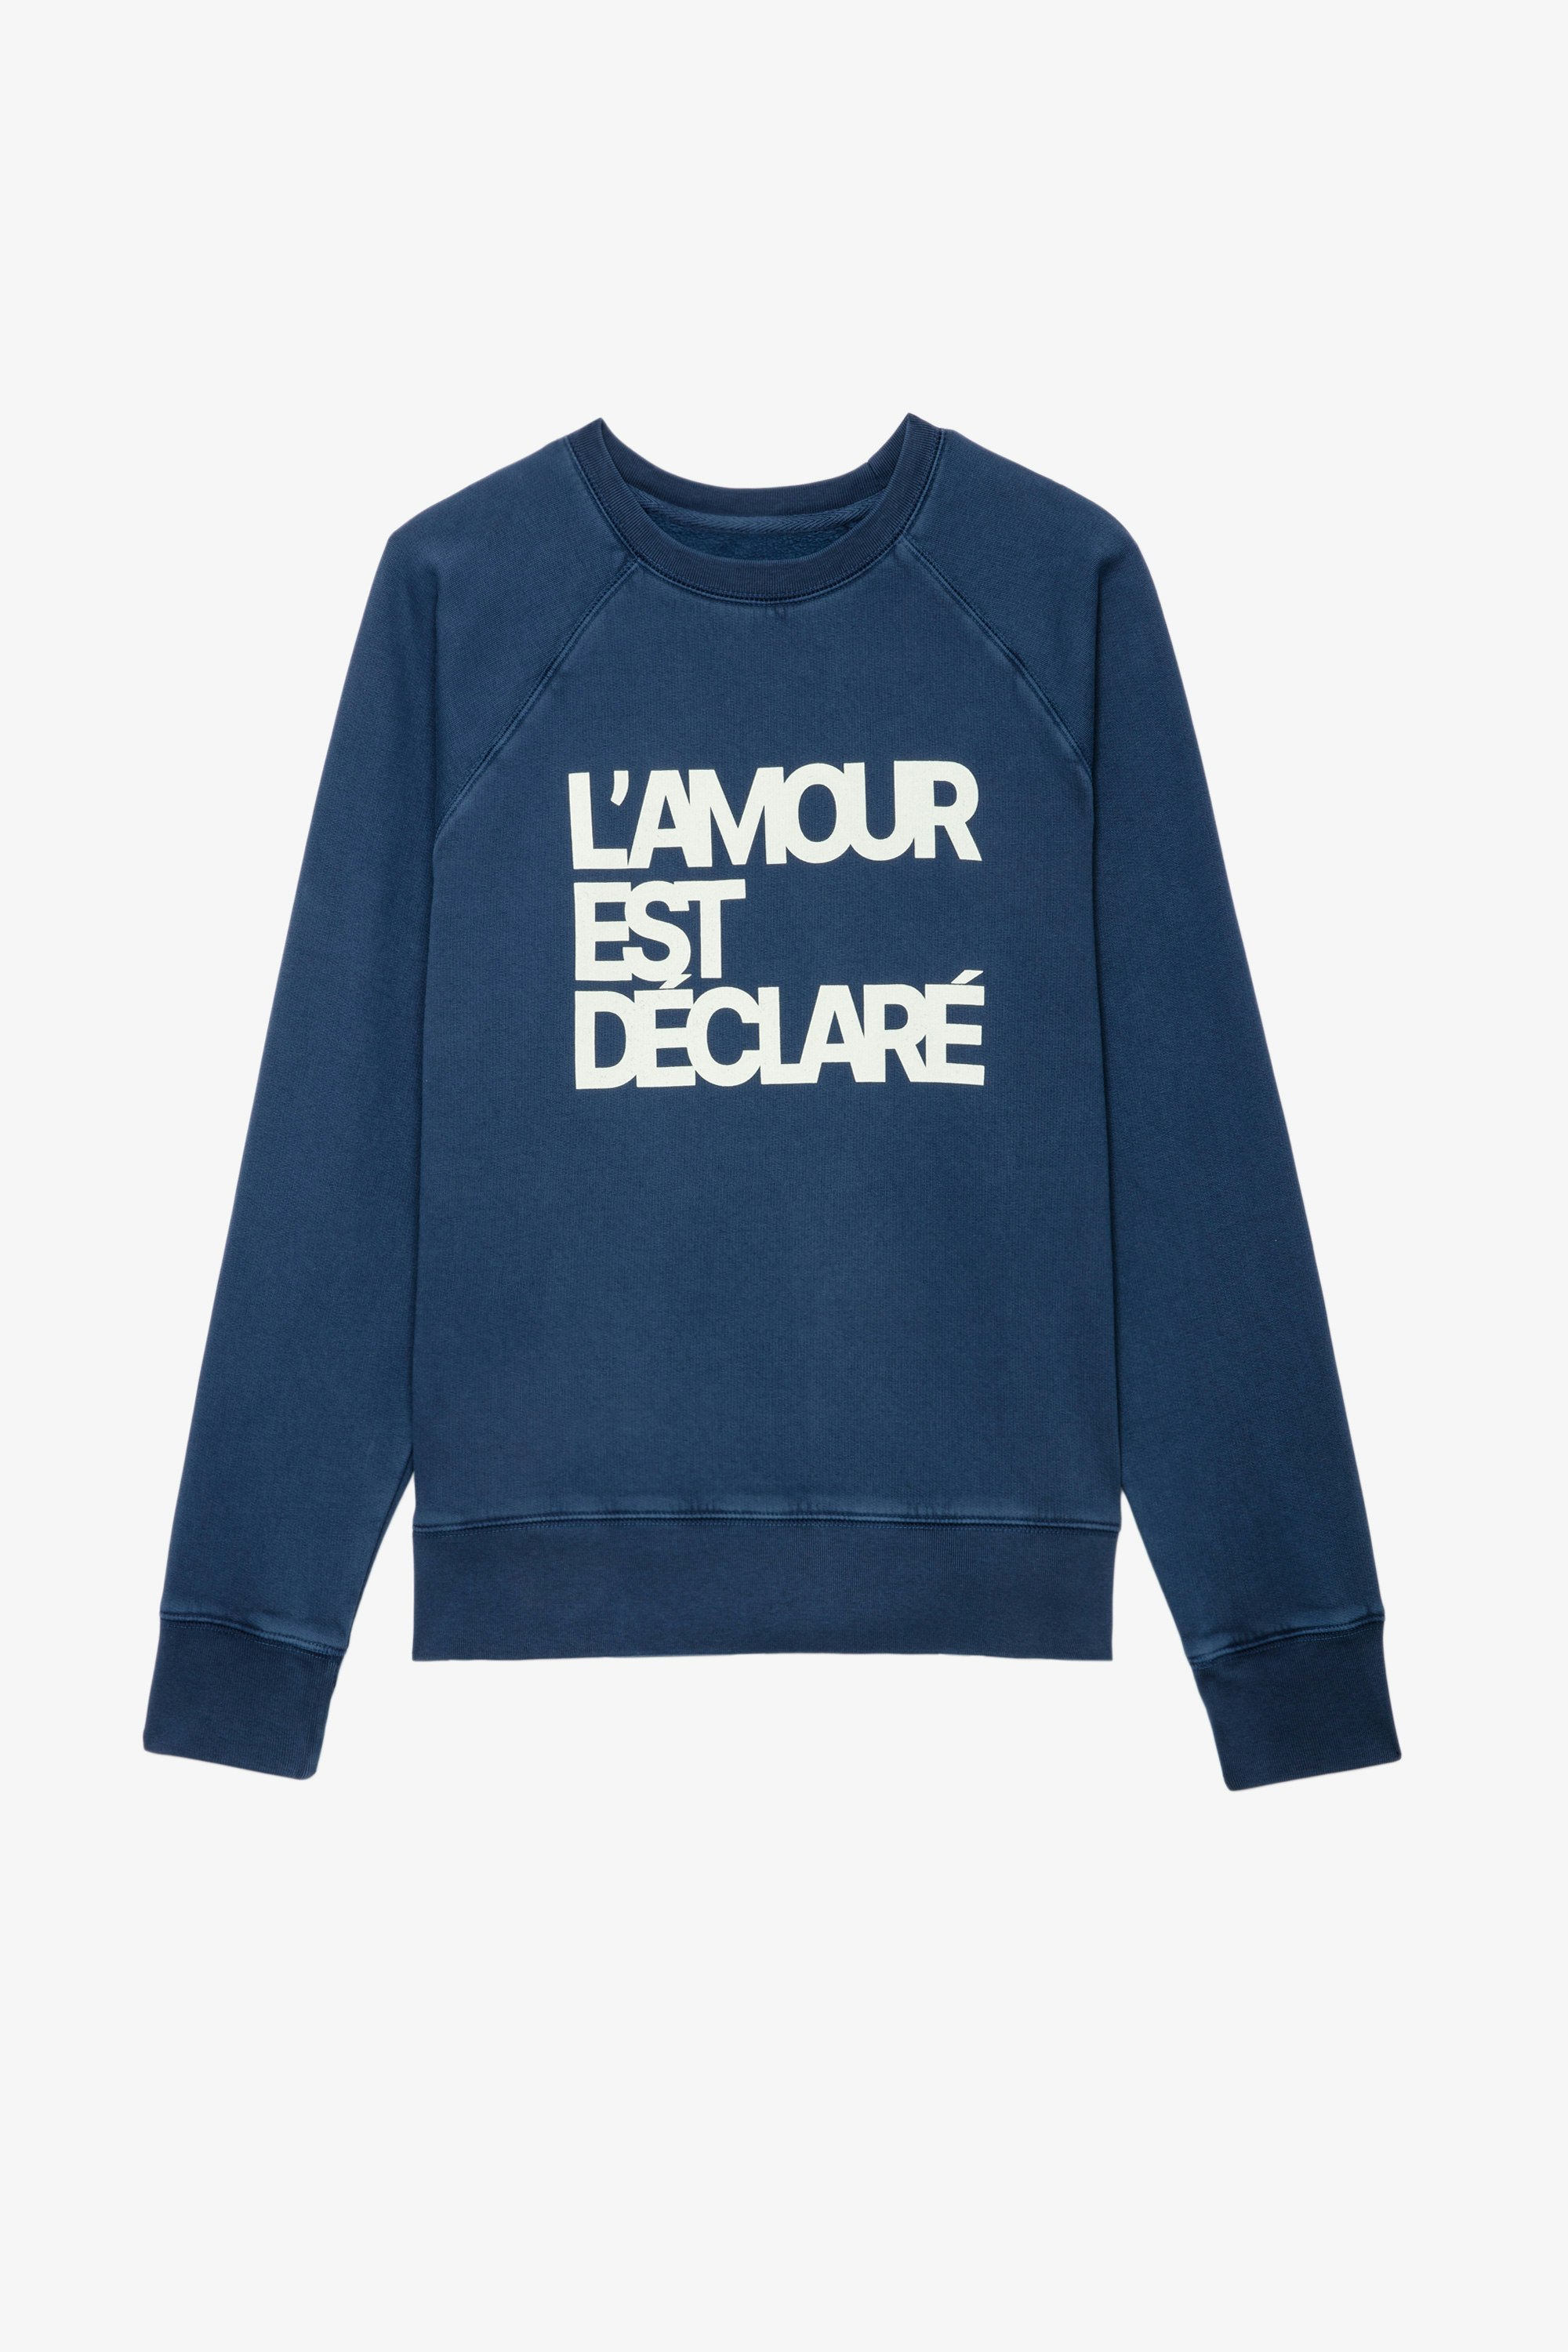 Upper L'Amour Est Déclaré Sweatshirt Women’s blue cotton sweatshirt with “L'amour est déclaré” appliqué